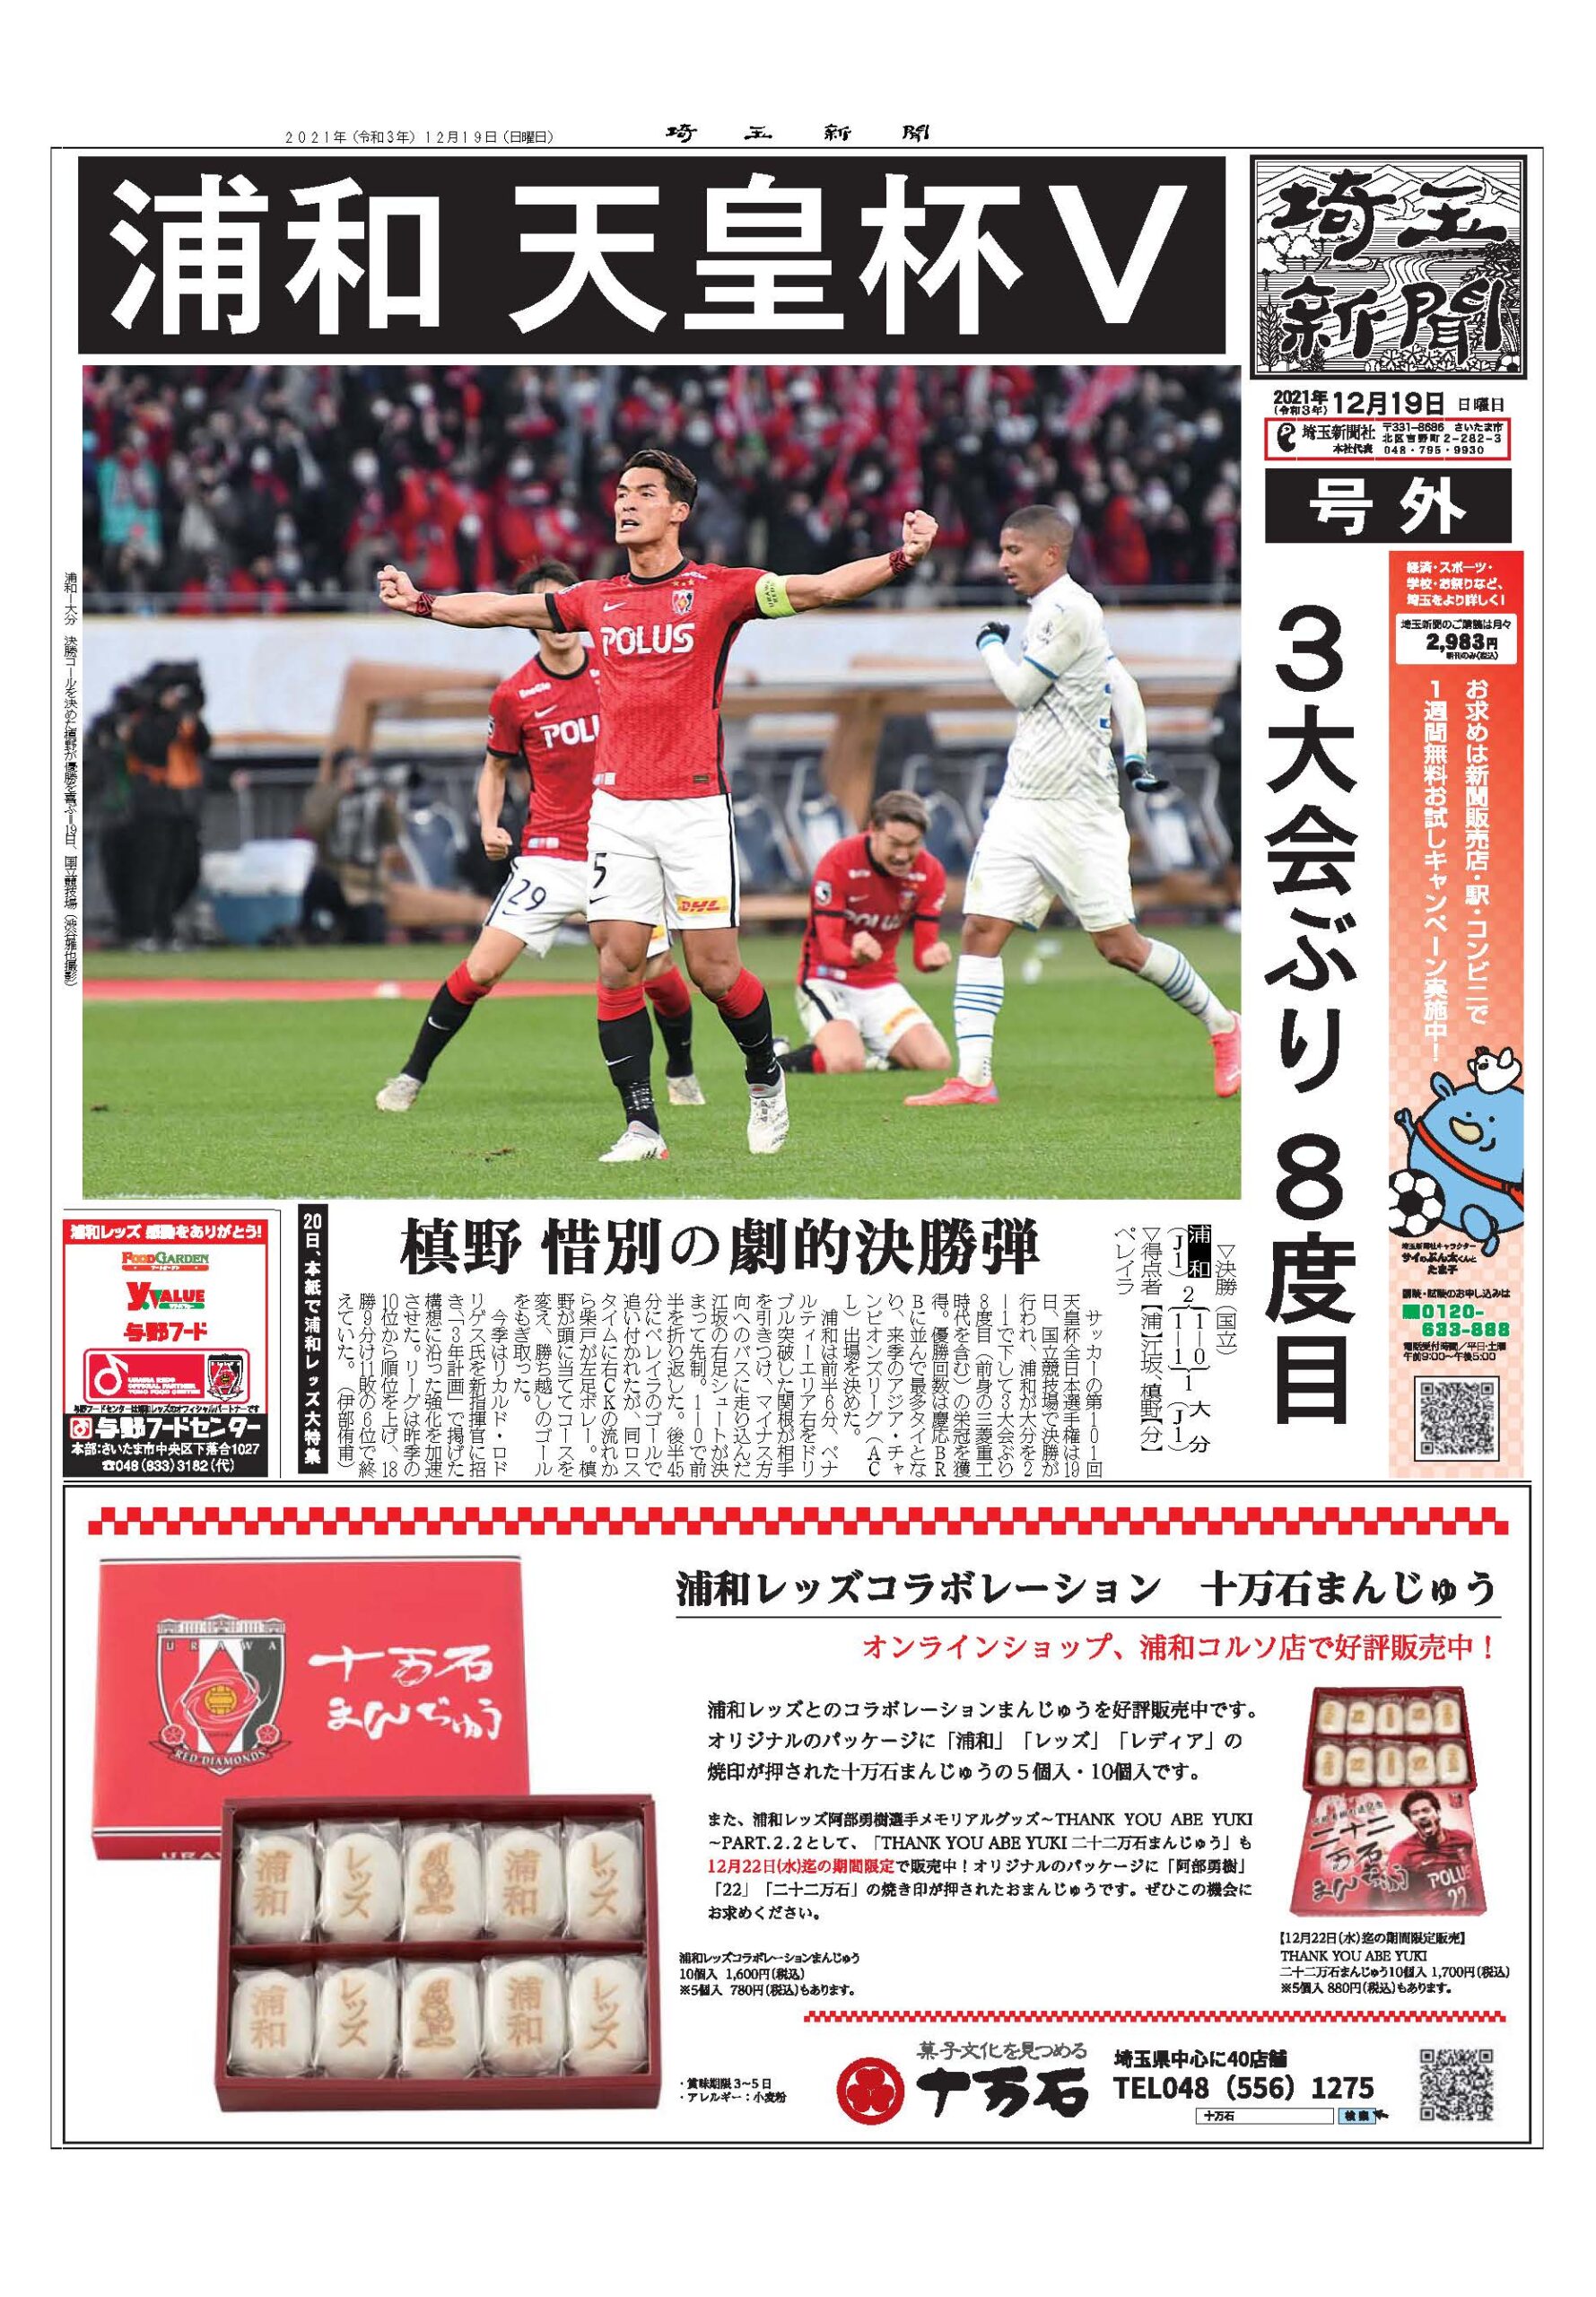 埼玉新聞２０２１年１２月１９日(日)の号外で浦和レッズコラボレーションまんじゅう、二十二万石まんじゅうが紹介されました。 イメージ